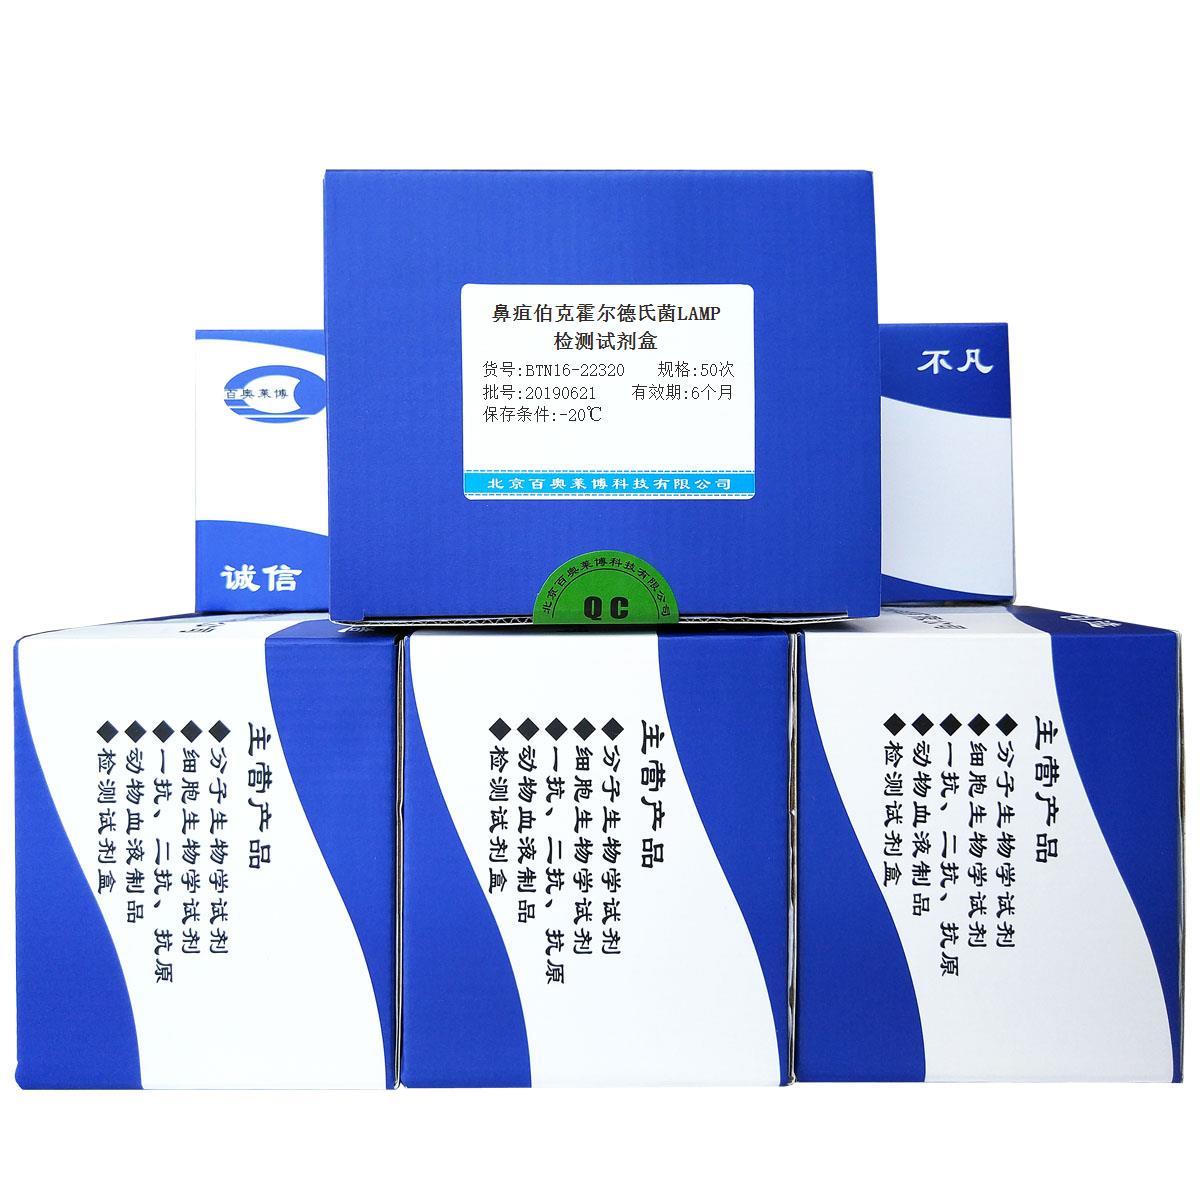 鼻疽伯克霍尔德氏菌LAMP检测试剂盒北京现货